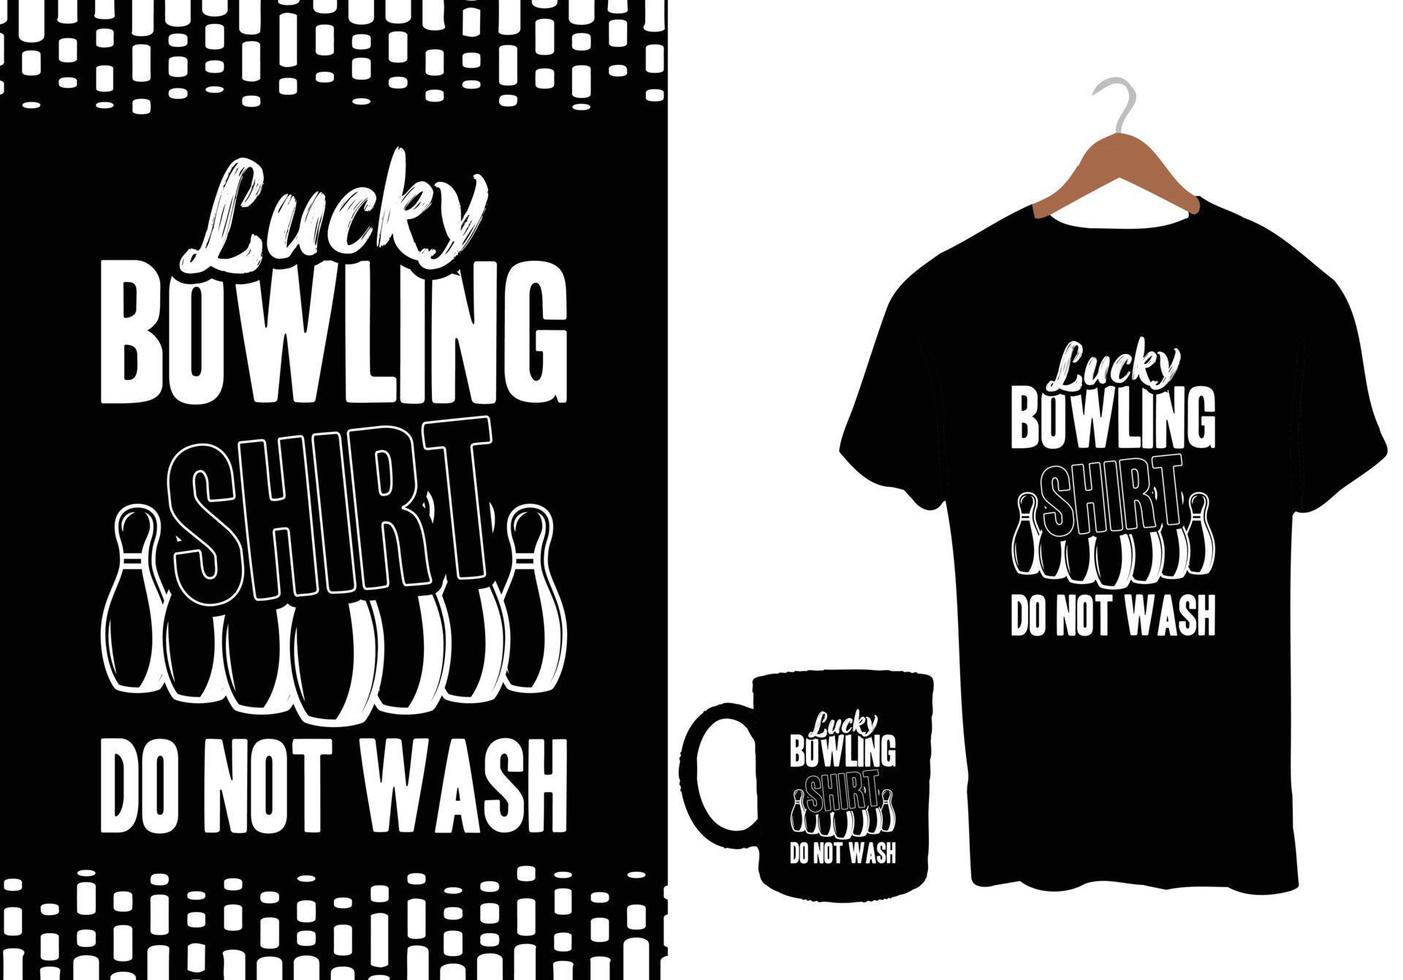 bowling vektor tshirt design